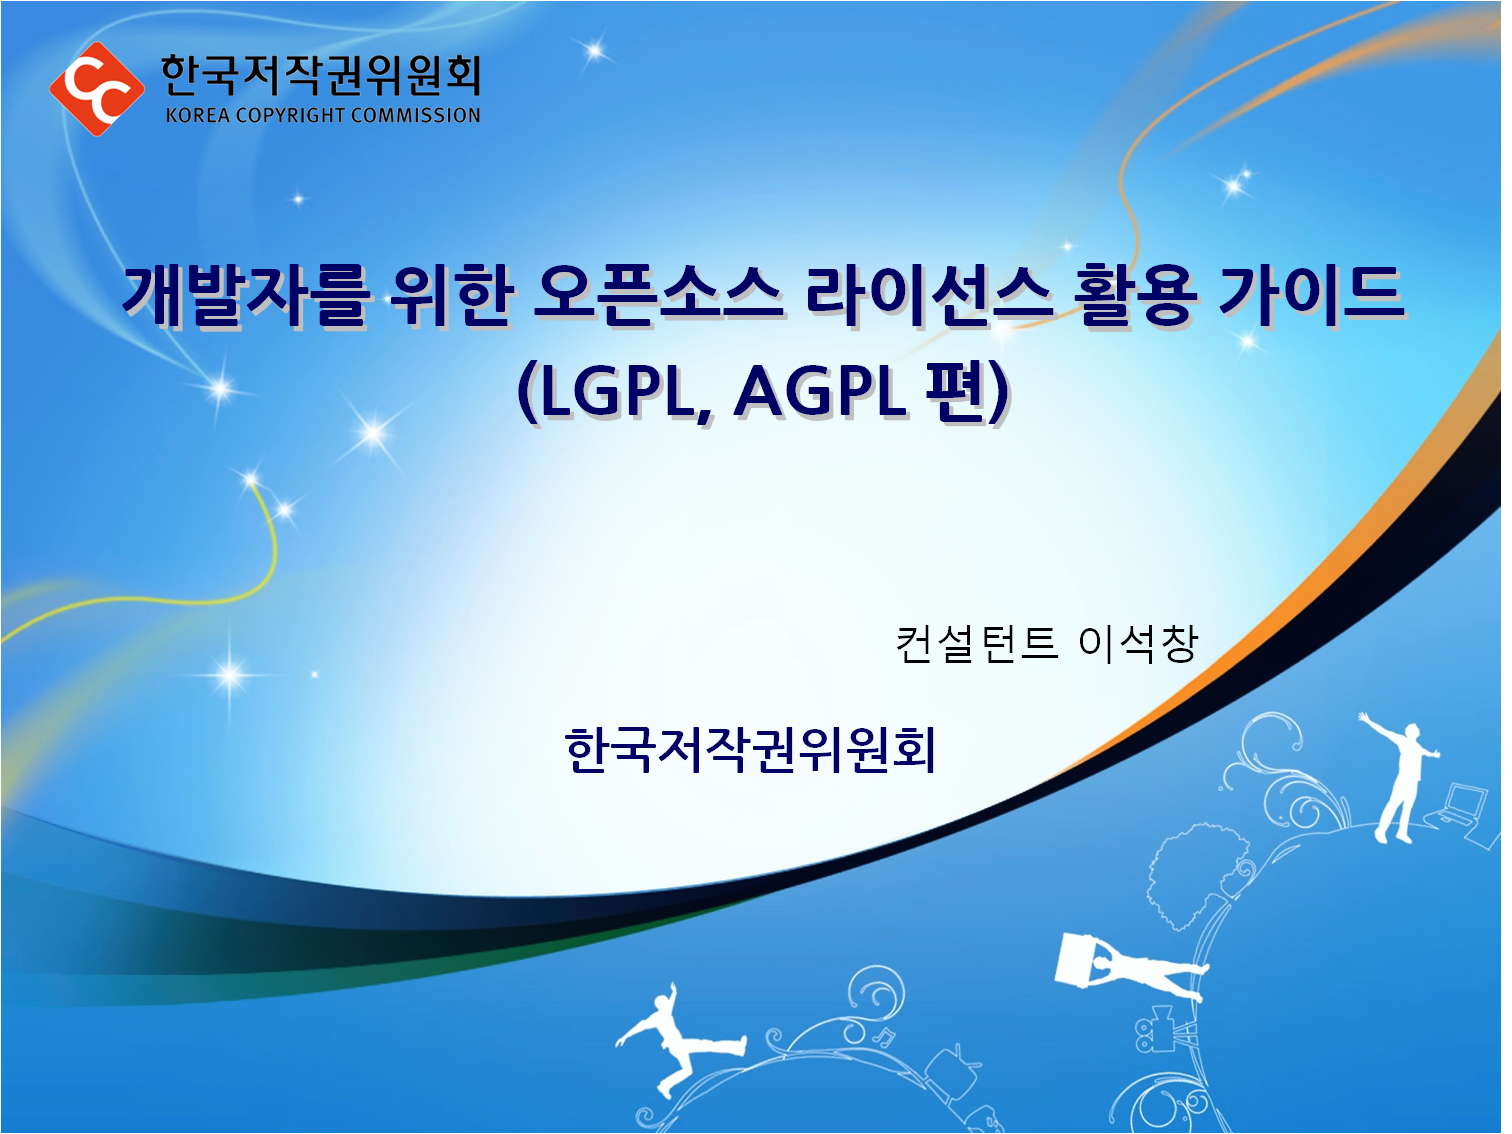 개발자를 위한 오픈소스 라이선스 활용 가이드(LGPL, AGPL 편)